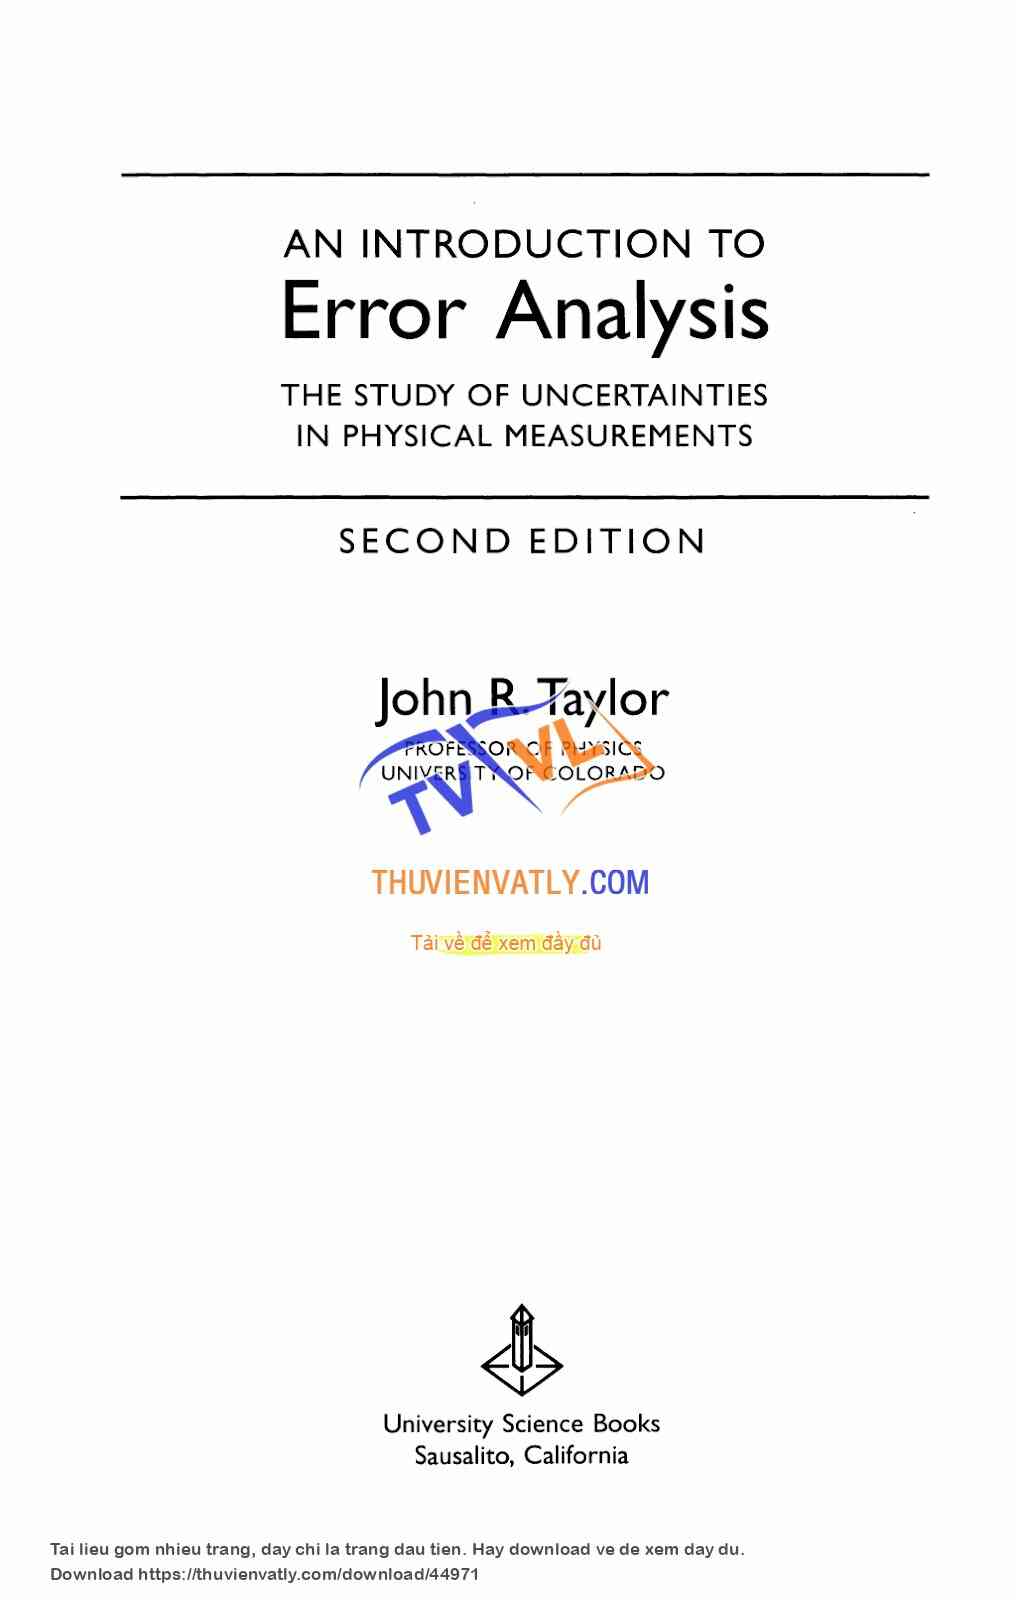 An Introduction to Error Analysis, John Taylor